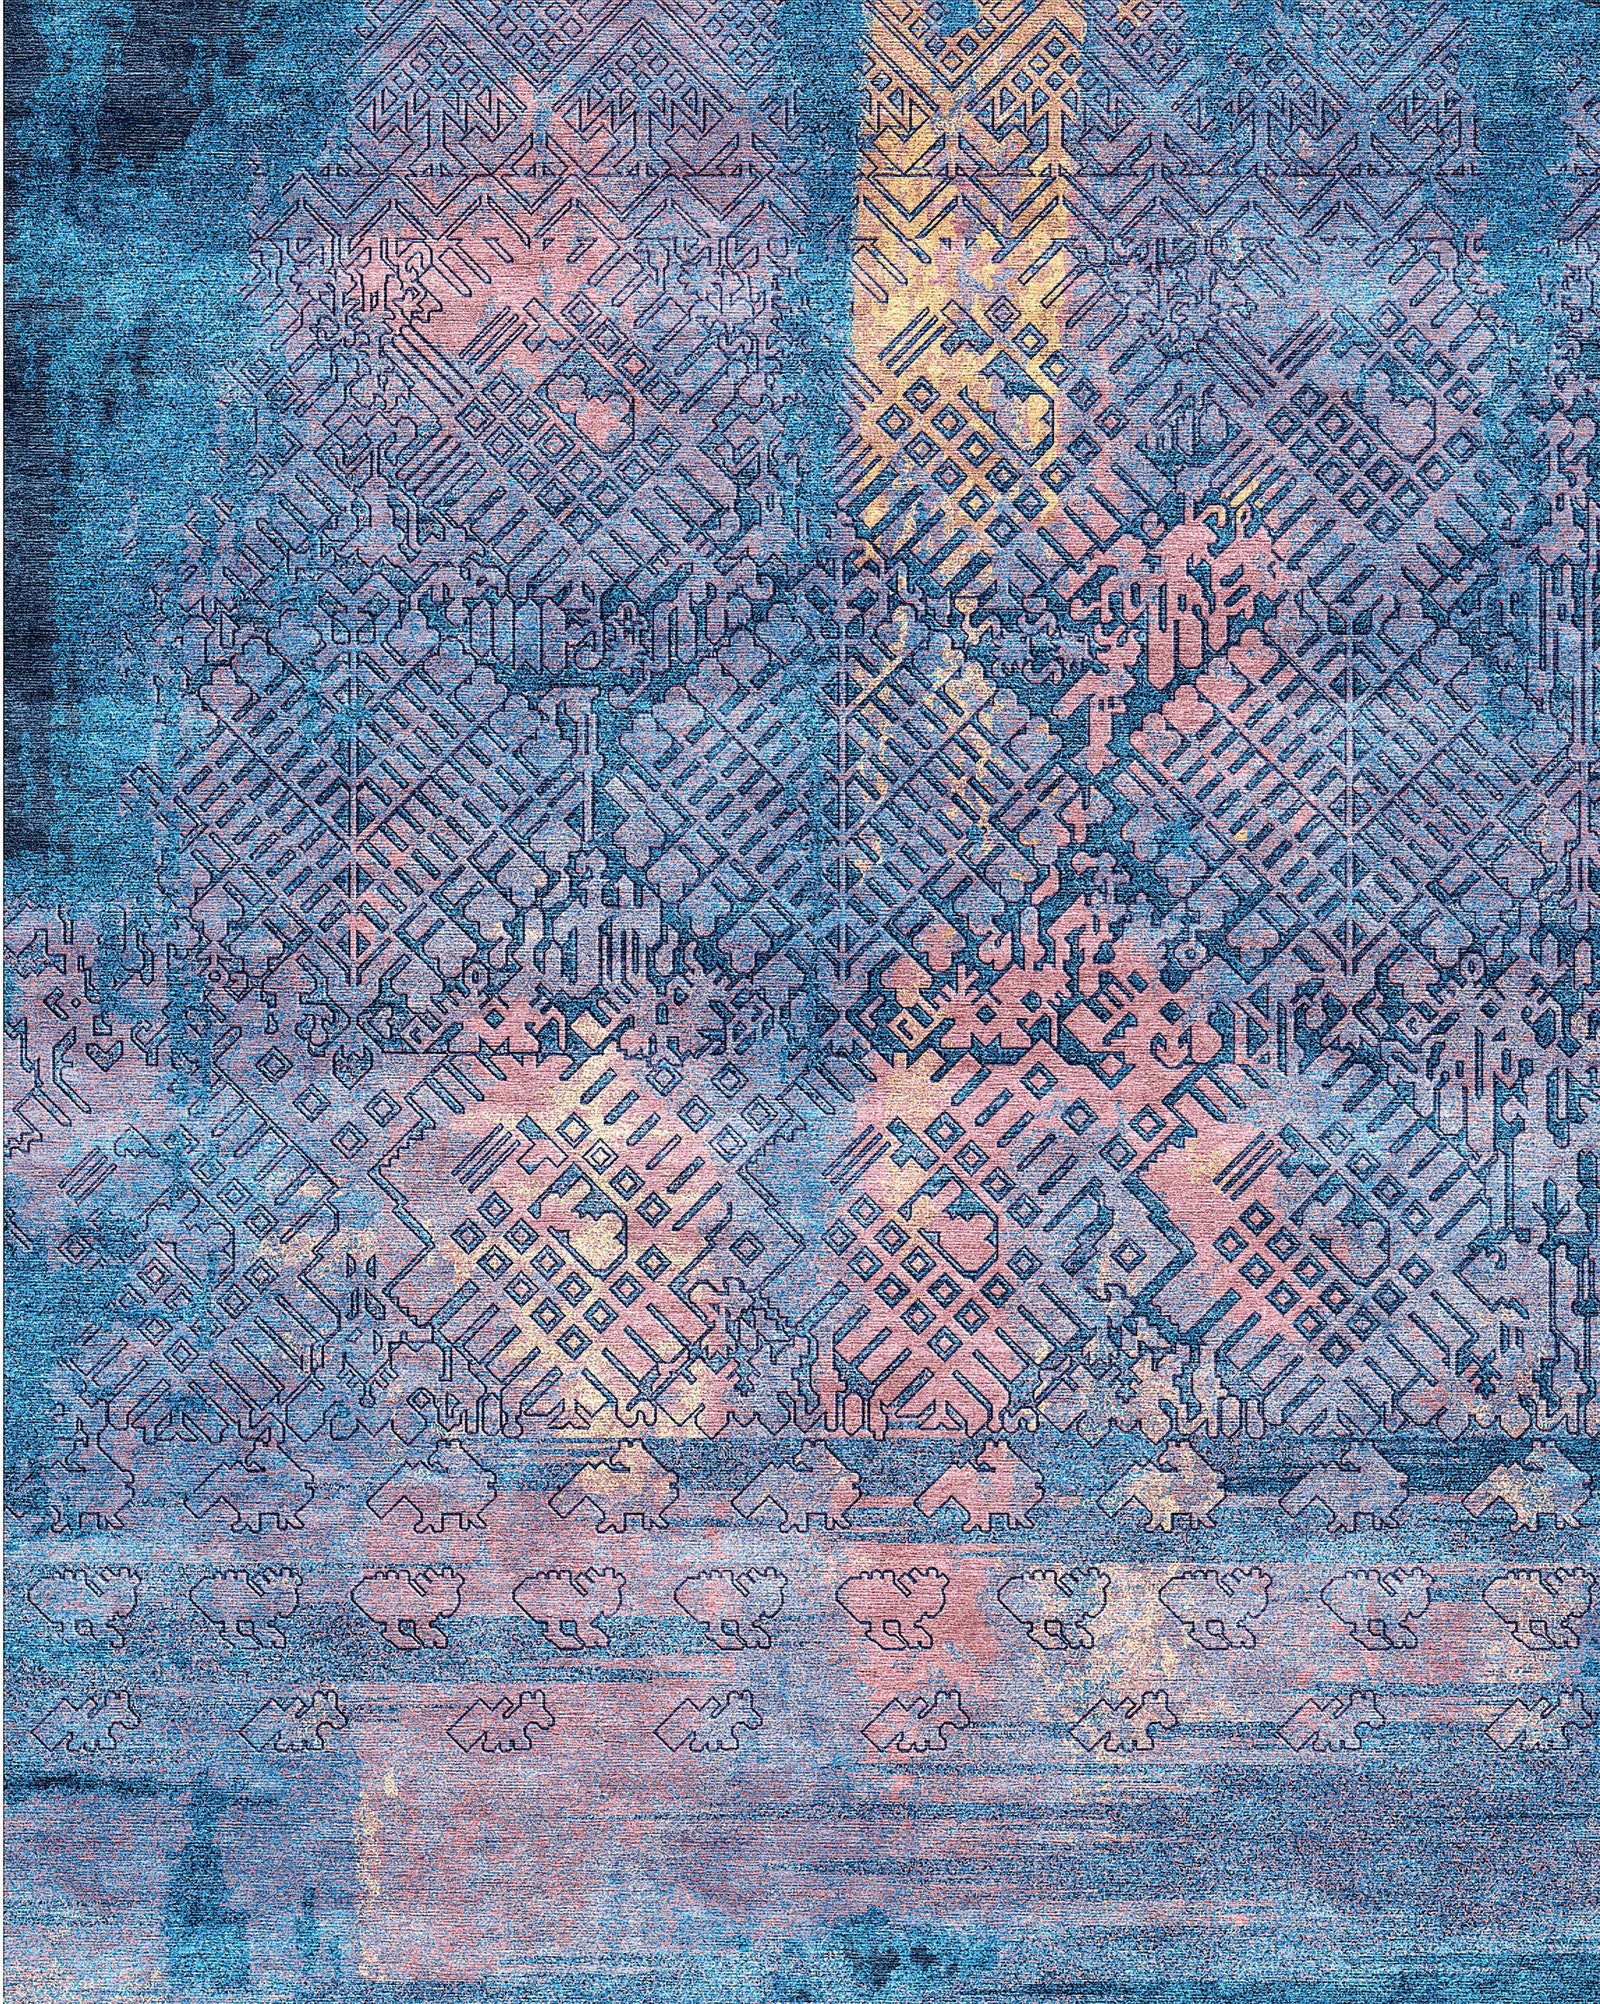 Геометричные узоры на ковре Atitlan Dawn дизайнера Рехины Давилы из Гватемалы — это отражение гор на глади озера...